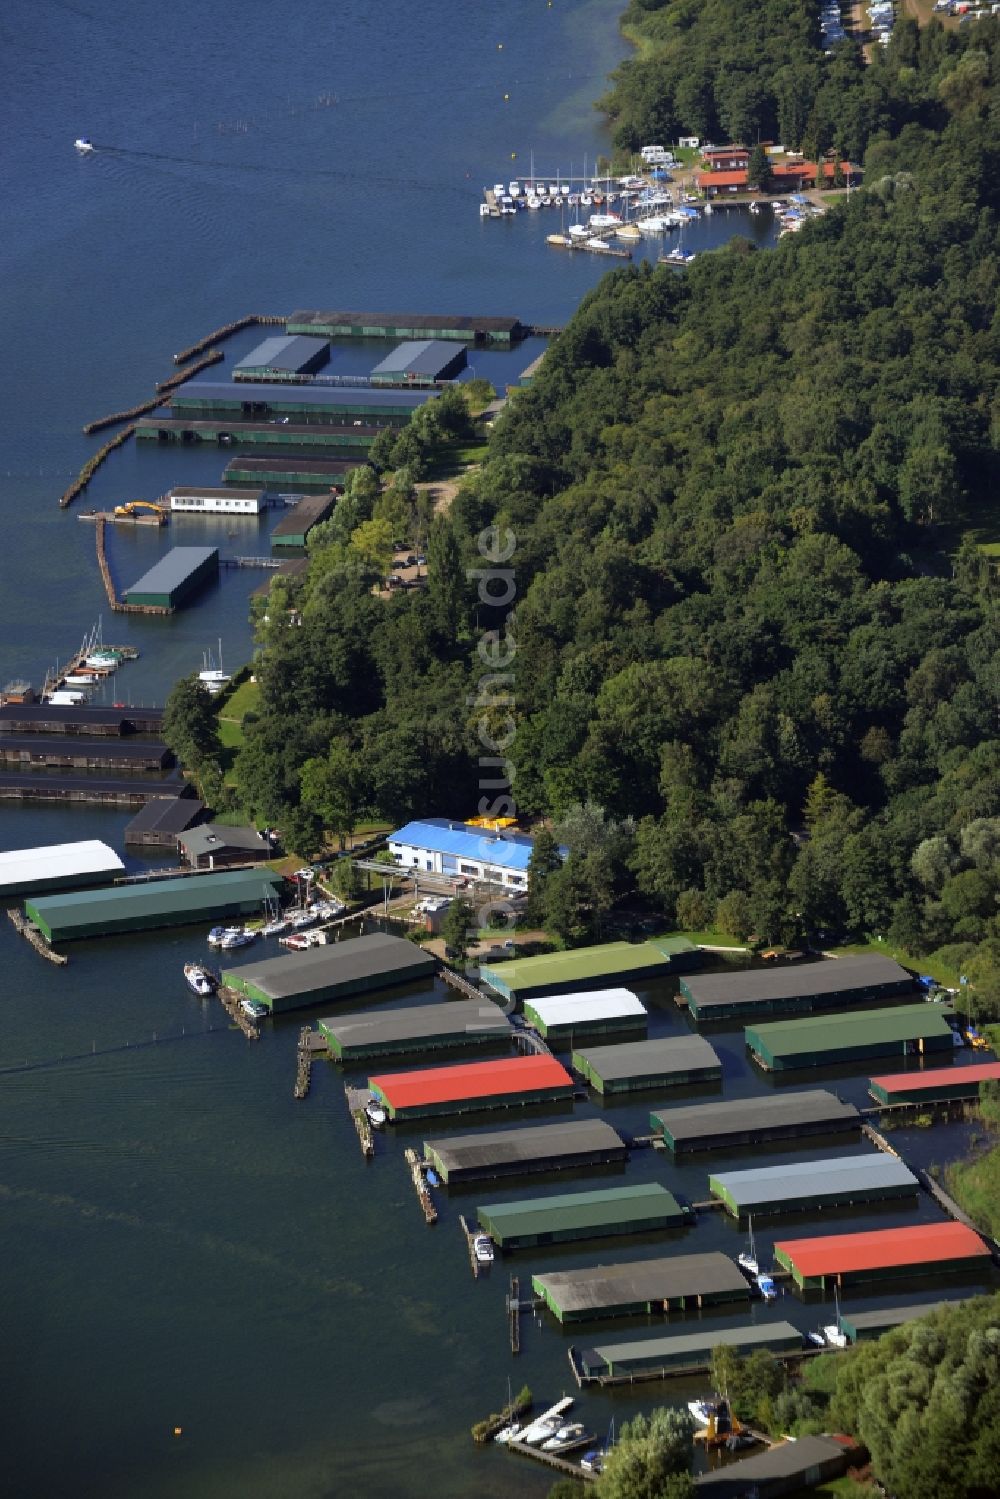 Luftbild Waren (Müritz) - Anlegestellen, Bootshäuser und Bootsliegeplätzen am Uferbereich des Sees Binnenmüritz in Waren (Müritz) im Bundesland Mecklenburg-Vorpommern